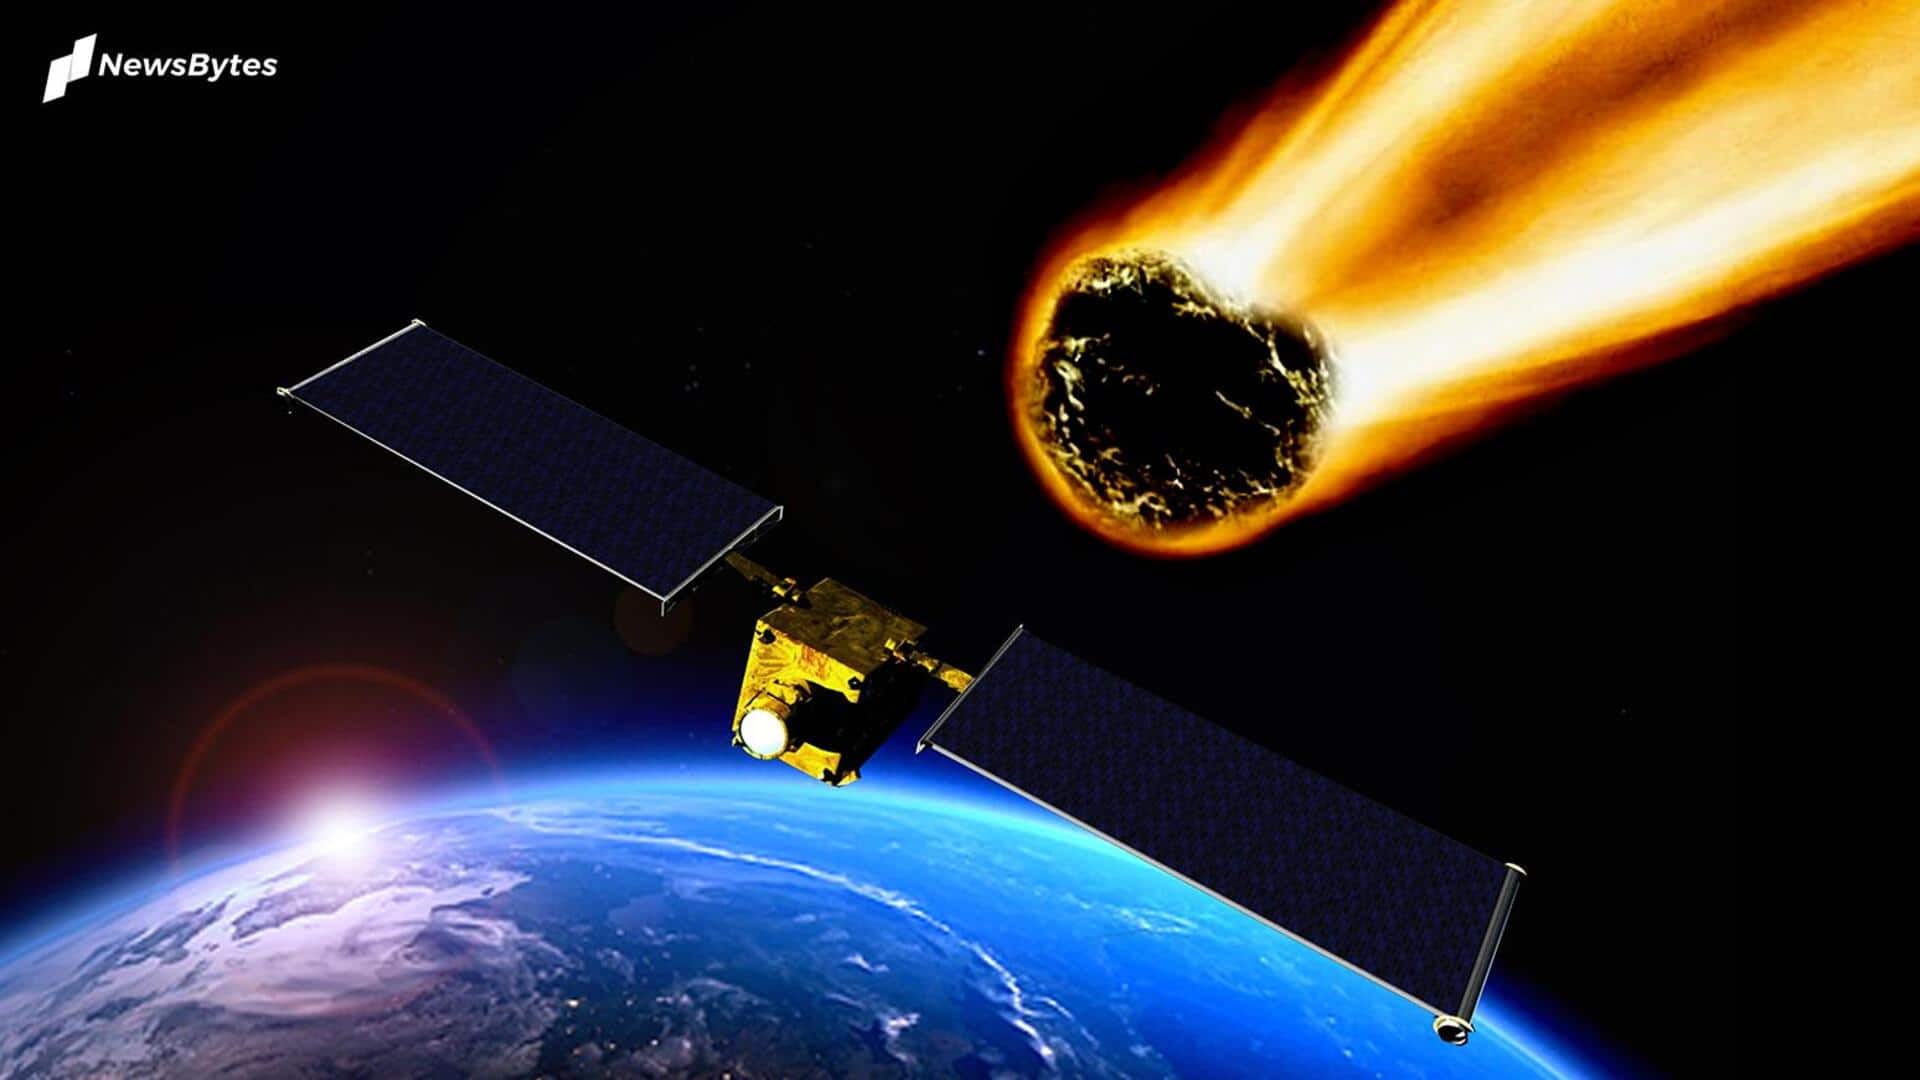 नासा ने जारी किया अलर्ट, पृथ्वी की तरफ बढ़ रहा है 130 फीट चौड़ा एस्ट्रोयड